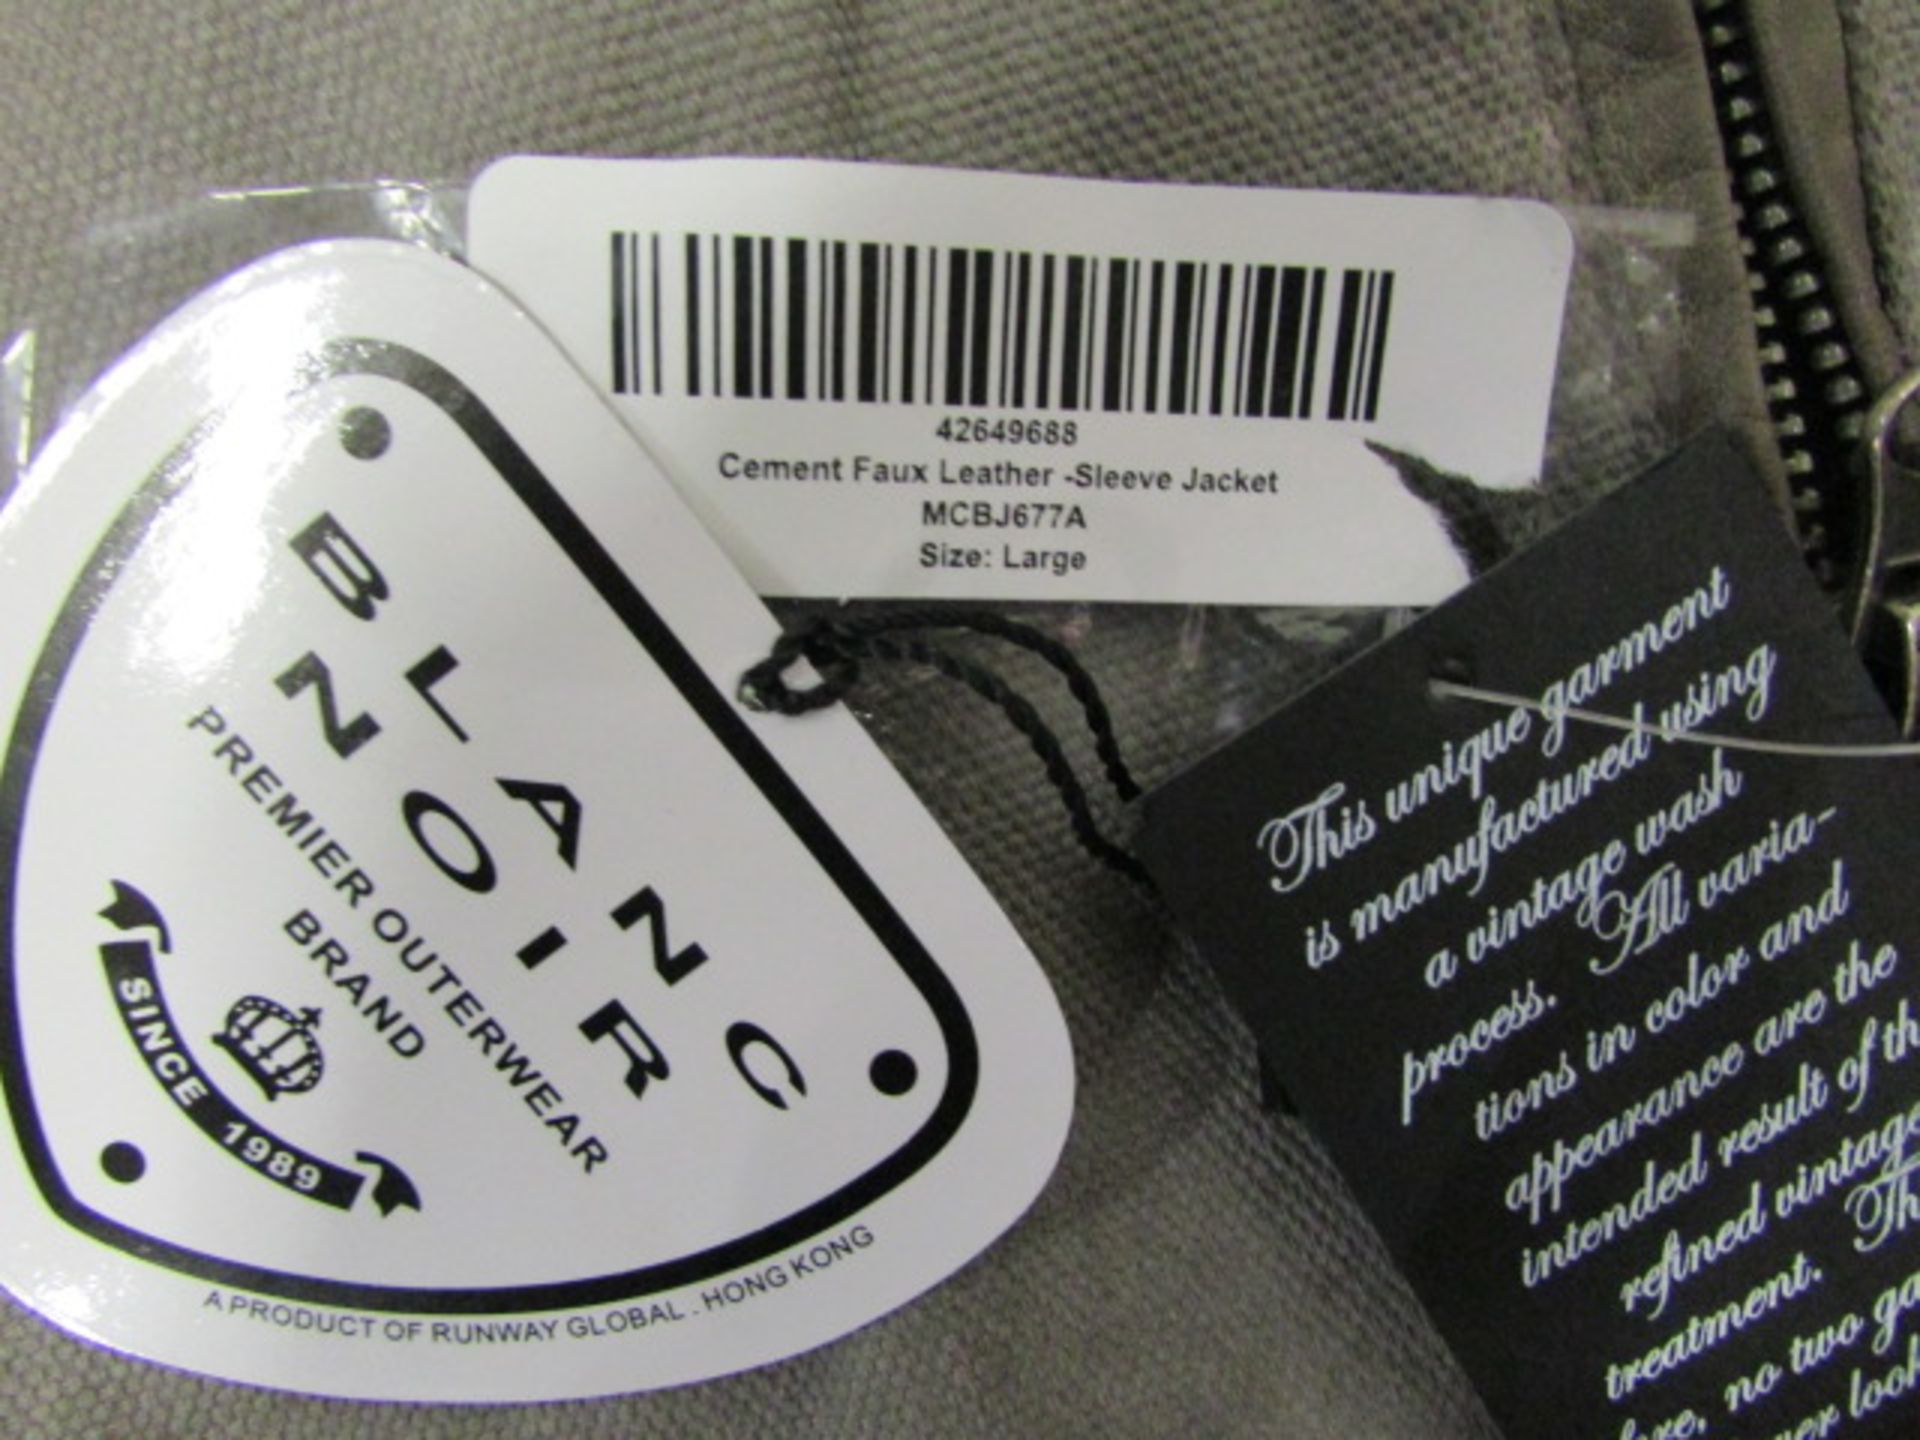 Ladies Blanc Noir Cement Faux Leather Jacket (Us Size: L) - Image 2 of 3